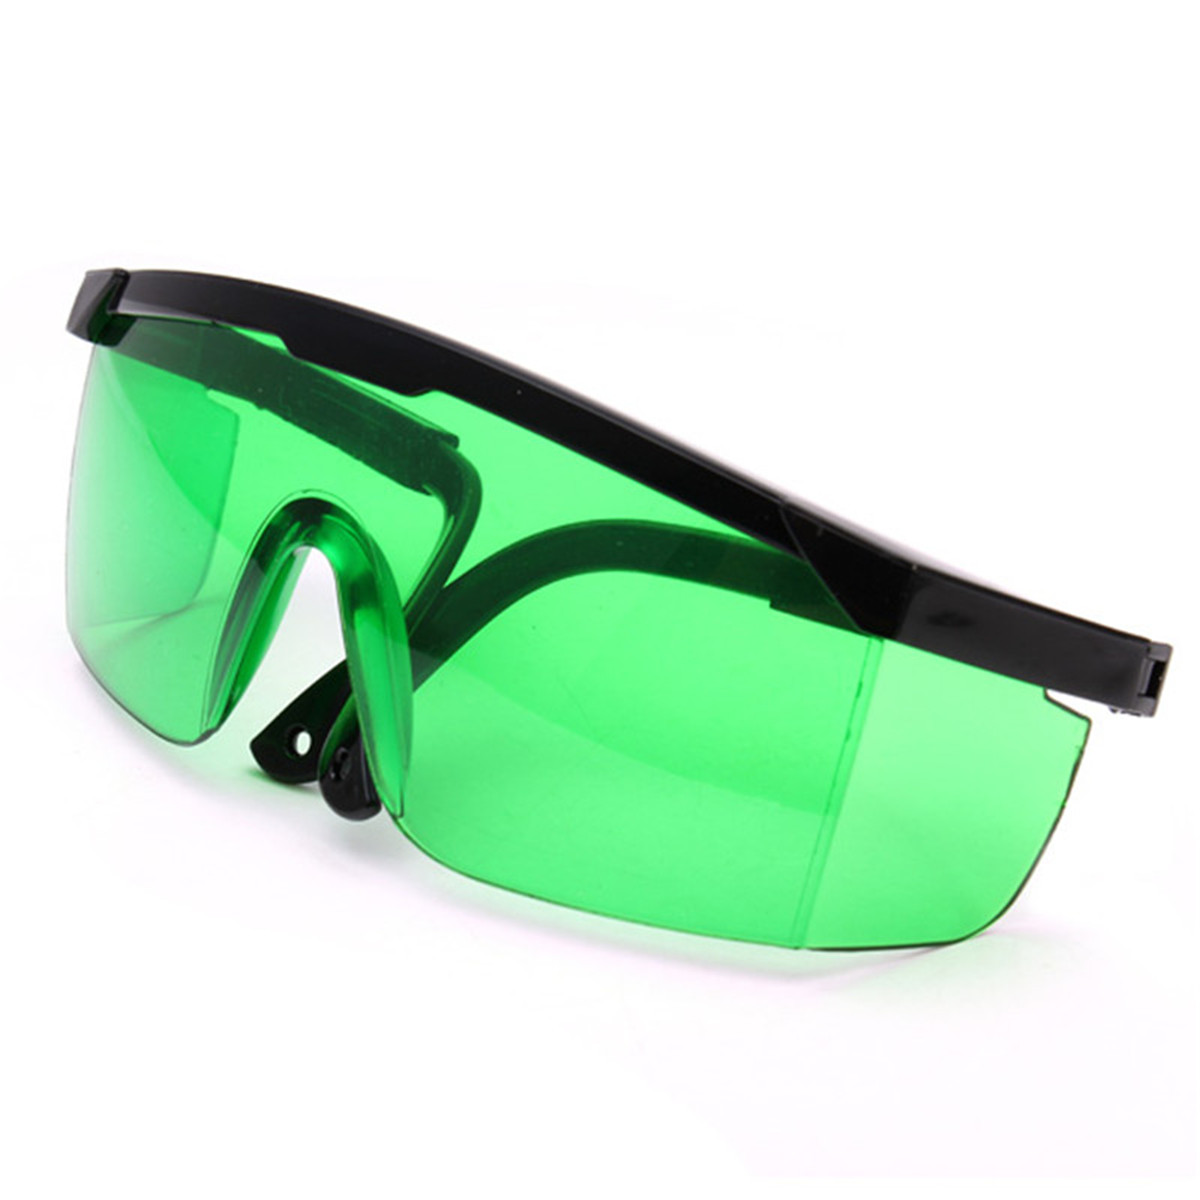 EleksMakerreg-Blue-violet-Laser-Goggles-Safety-Glasses-Laser-Protective-Eyewear-955972